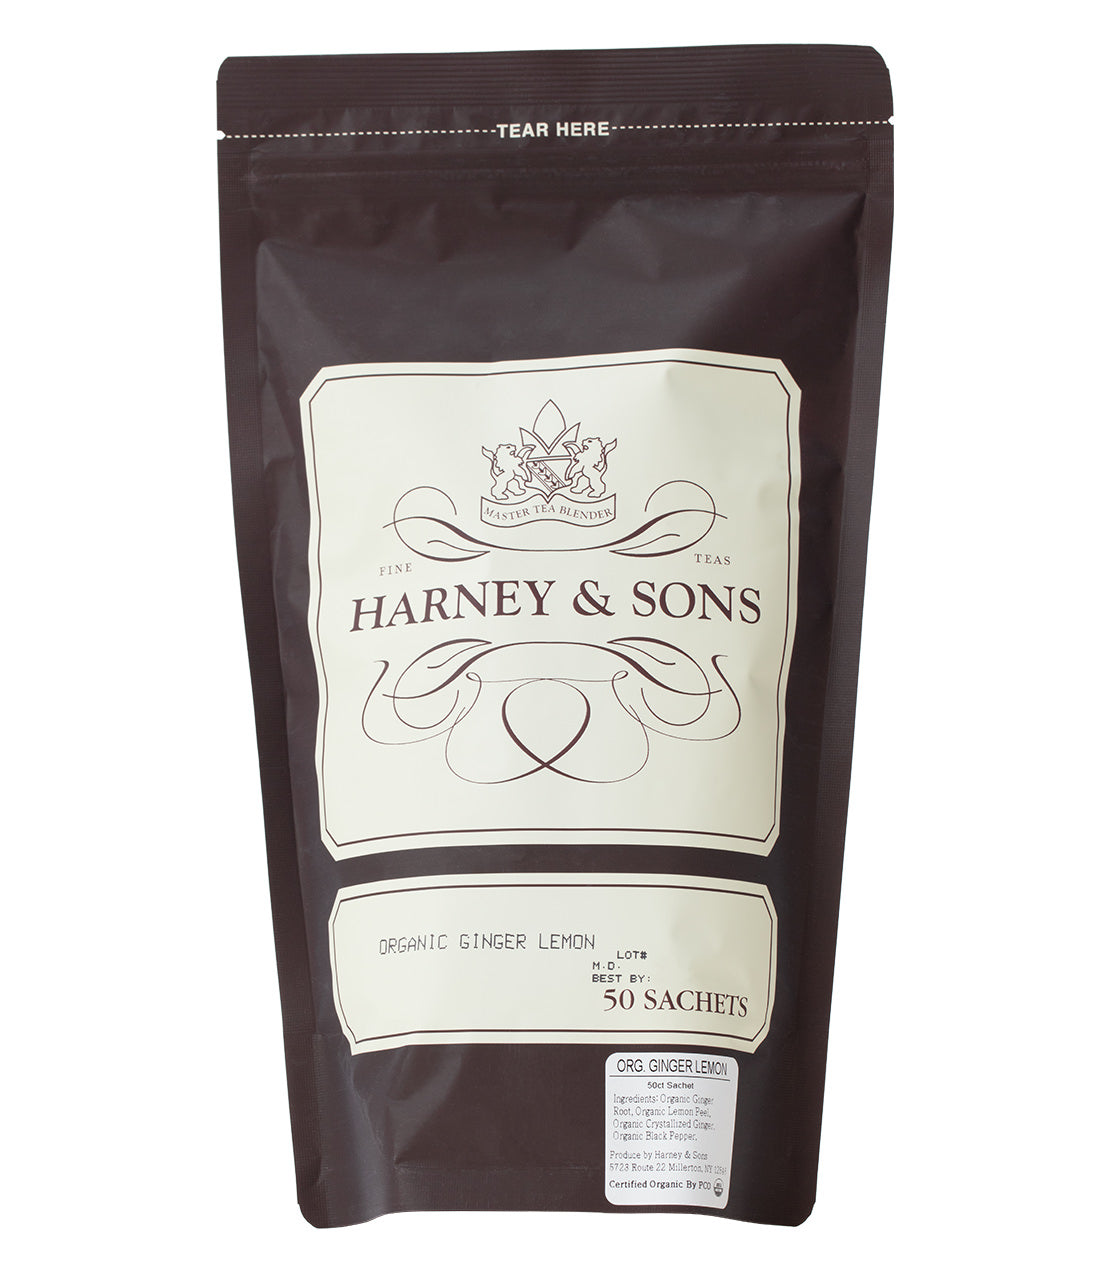 Organic Ginger Lemon - Sachets Bag of 50 sachets - Harney & Sons Fine Teas